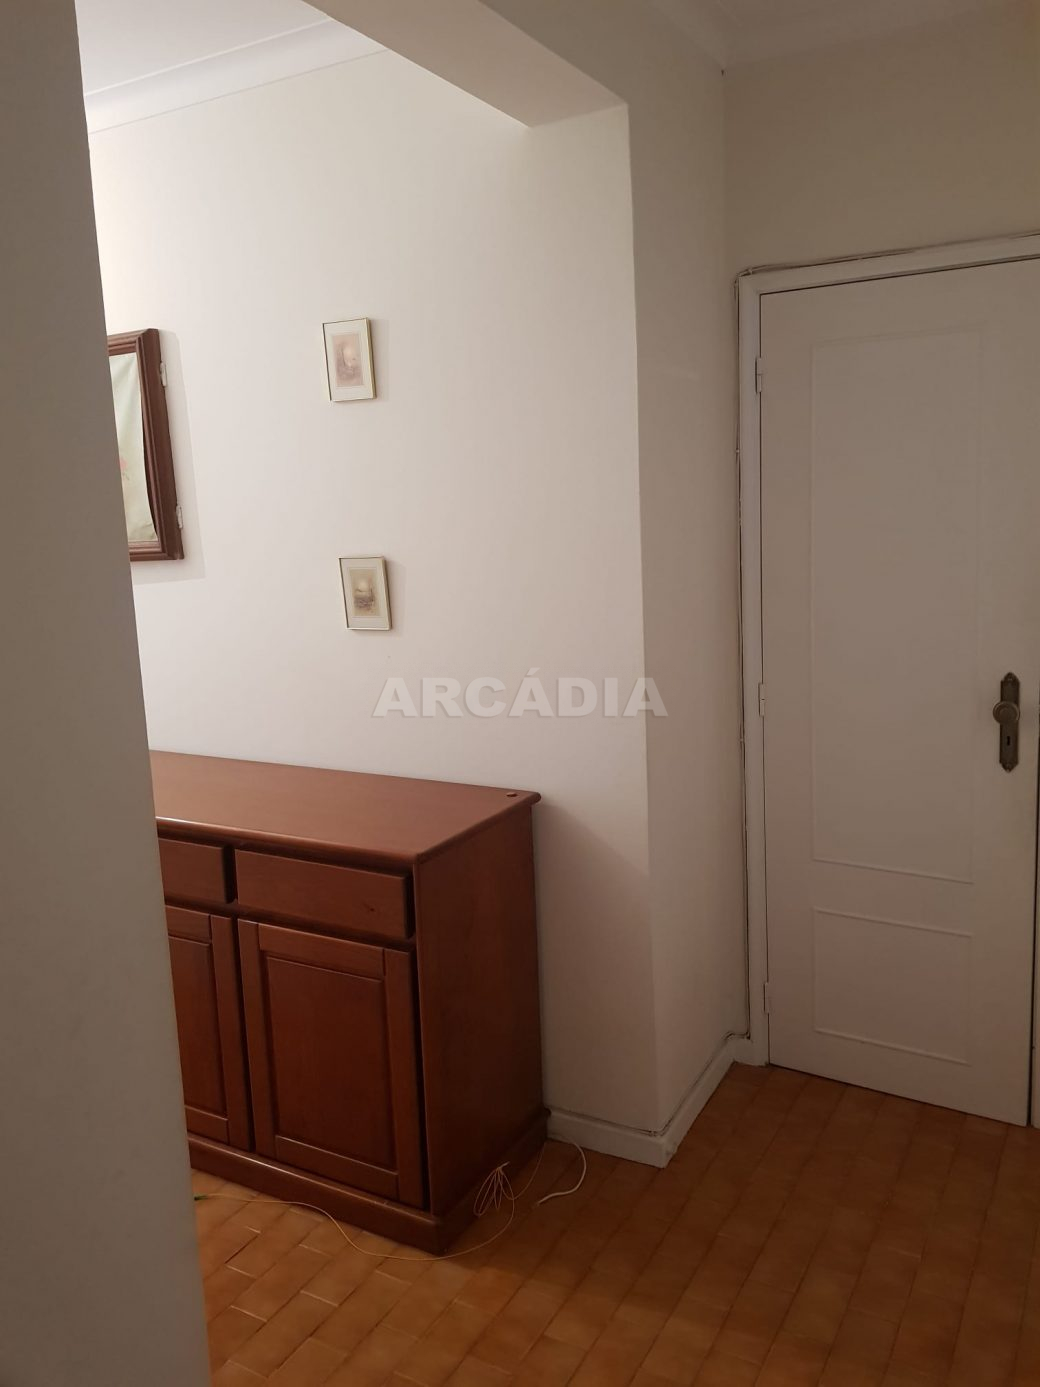 arcadia-imobiliaria-braga-apartamento-t-2+1-em-nogueira-para-venda-014